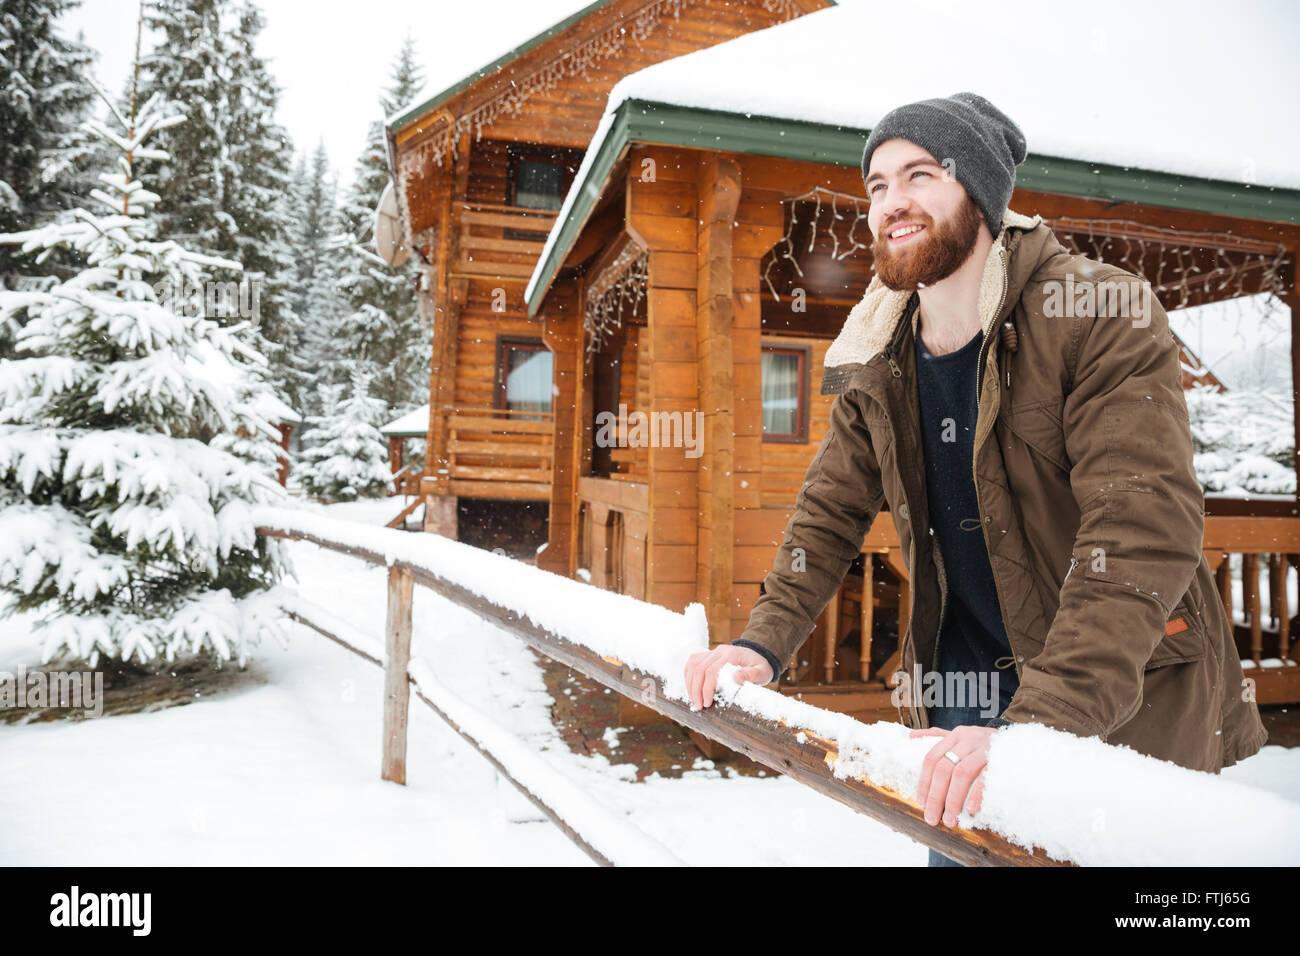 Ritratto di Allegro bello uomo barbuto in piedi nella parte anteriore del cottage di legno nella foresta di inverno Foto Stock